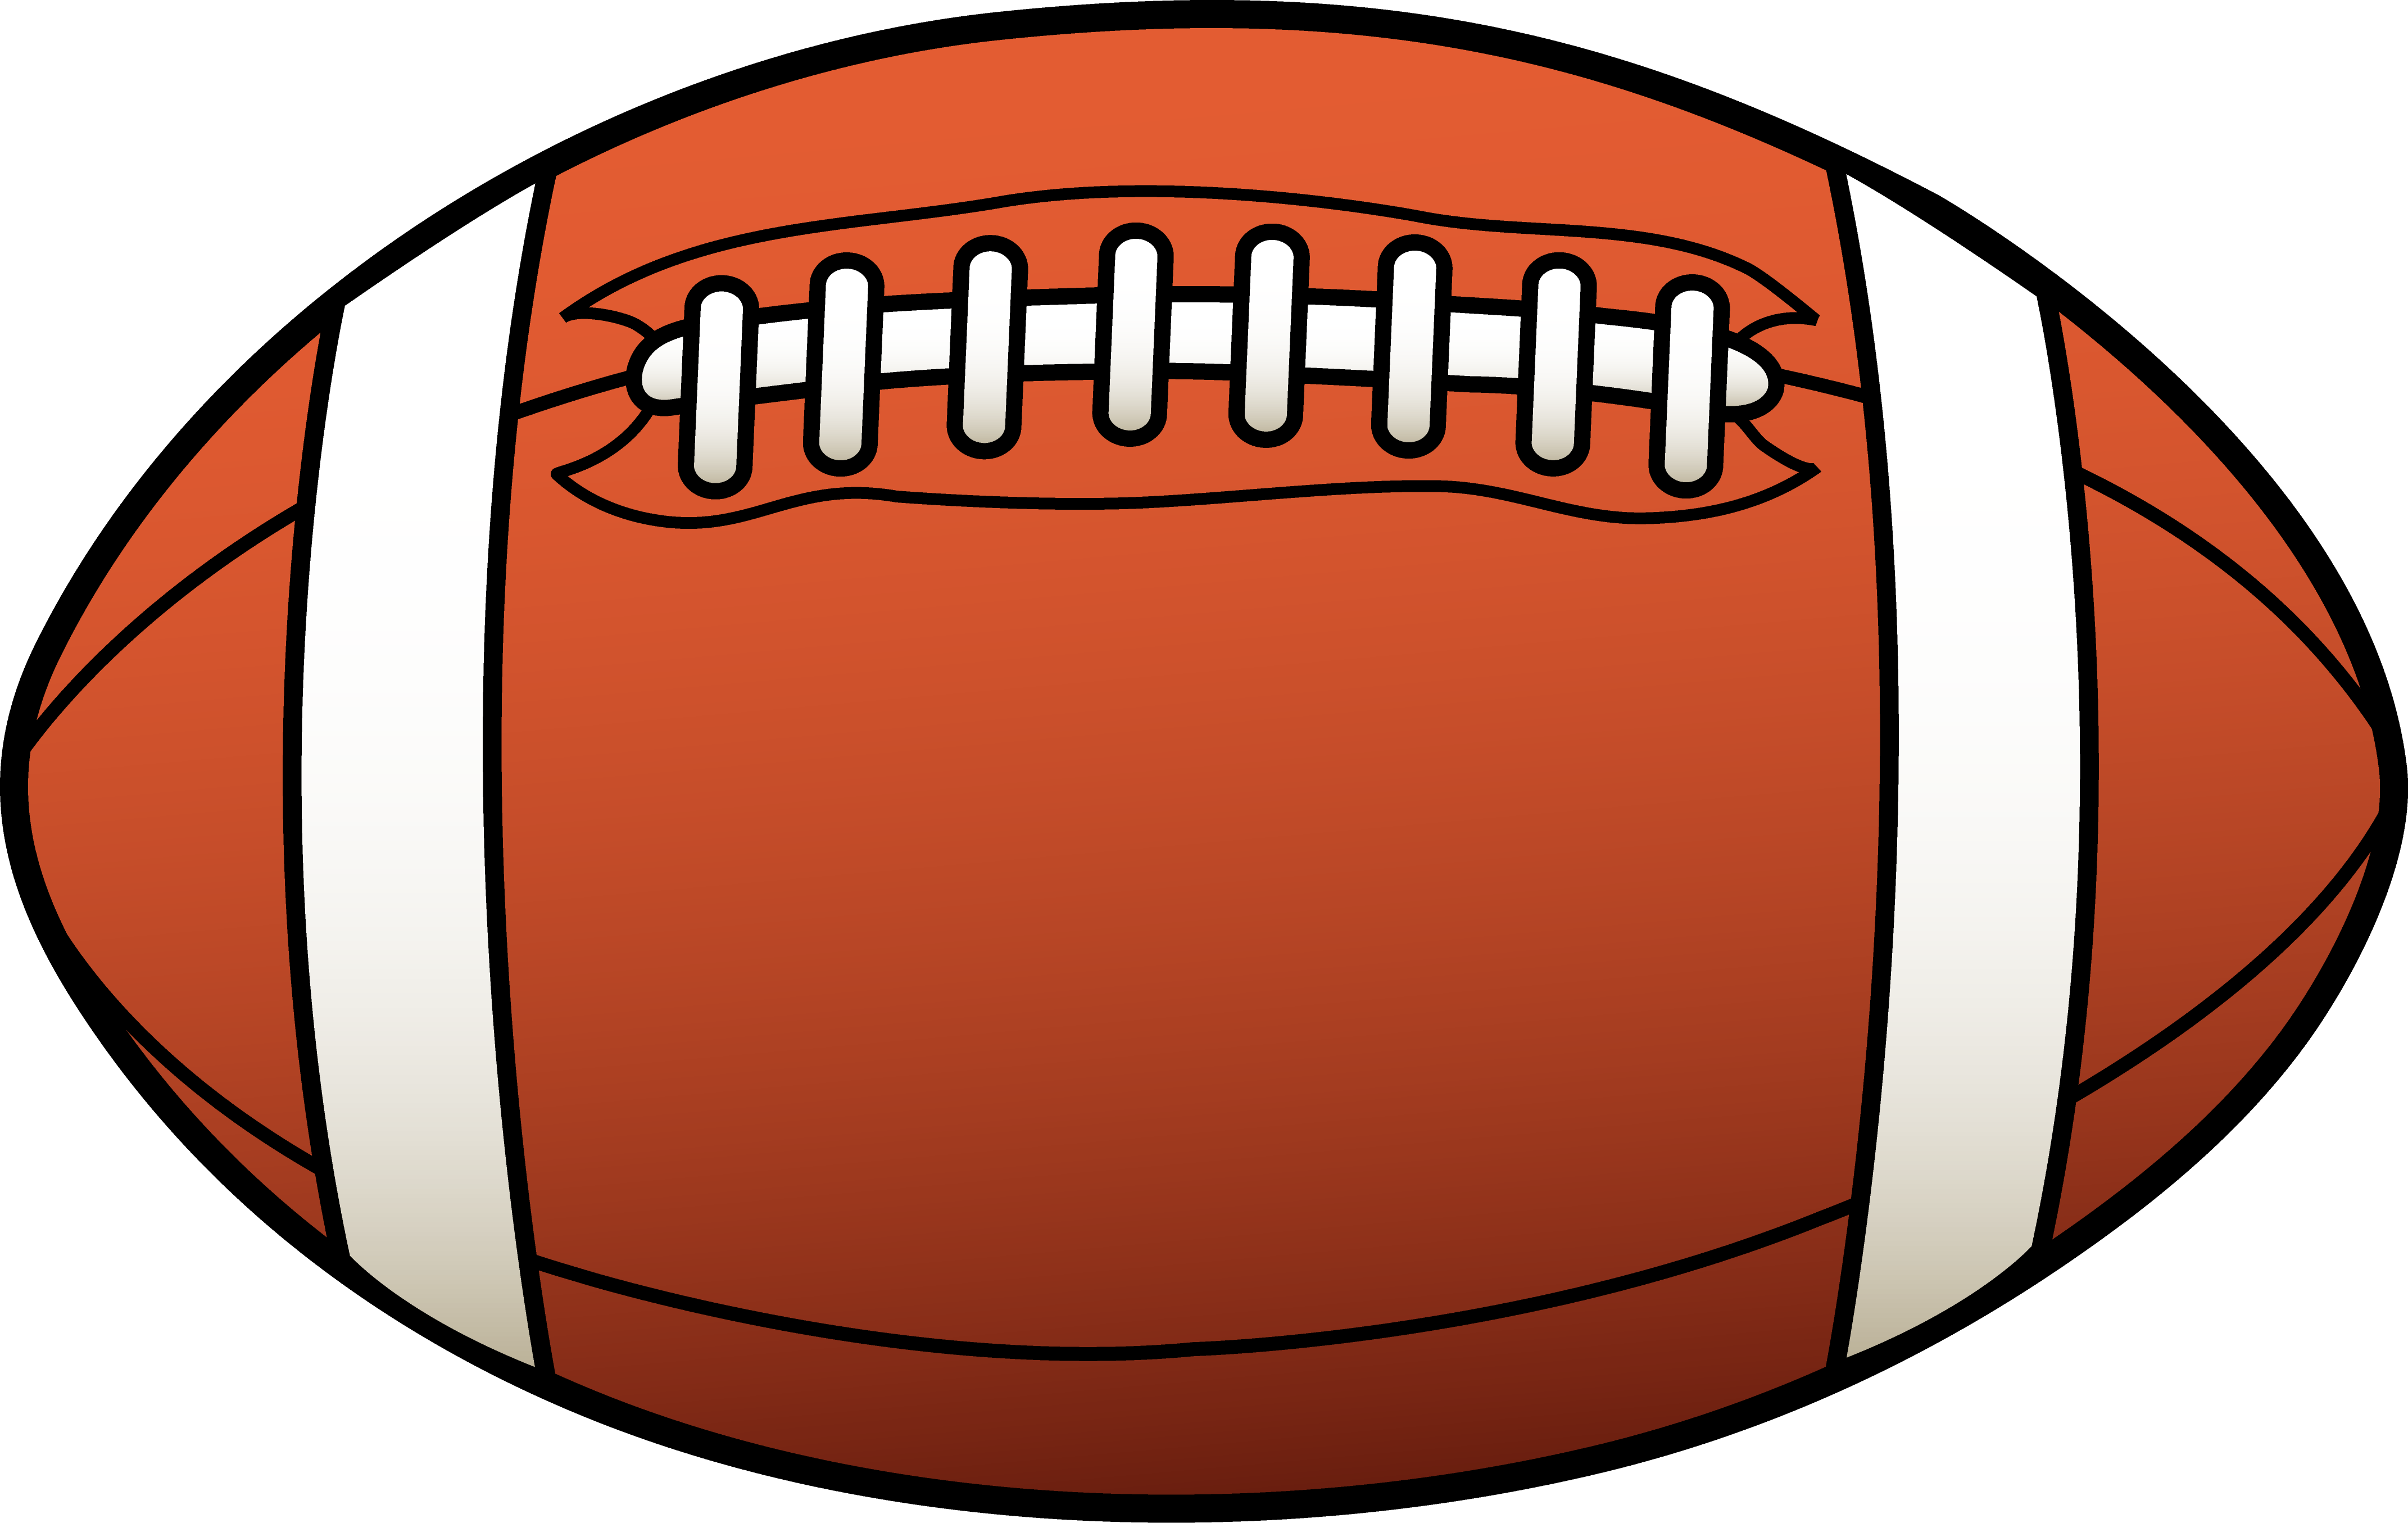 Football Player Clip Art